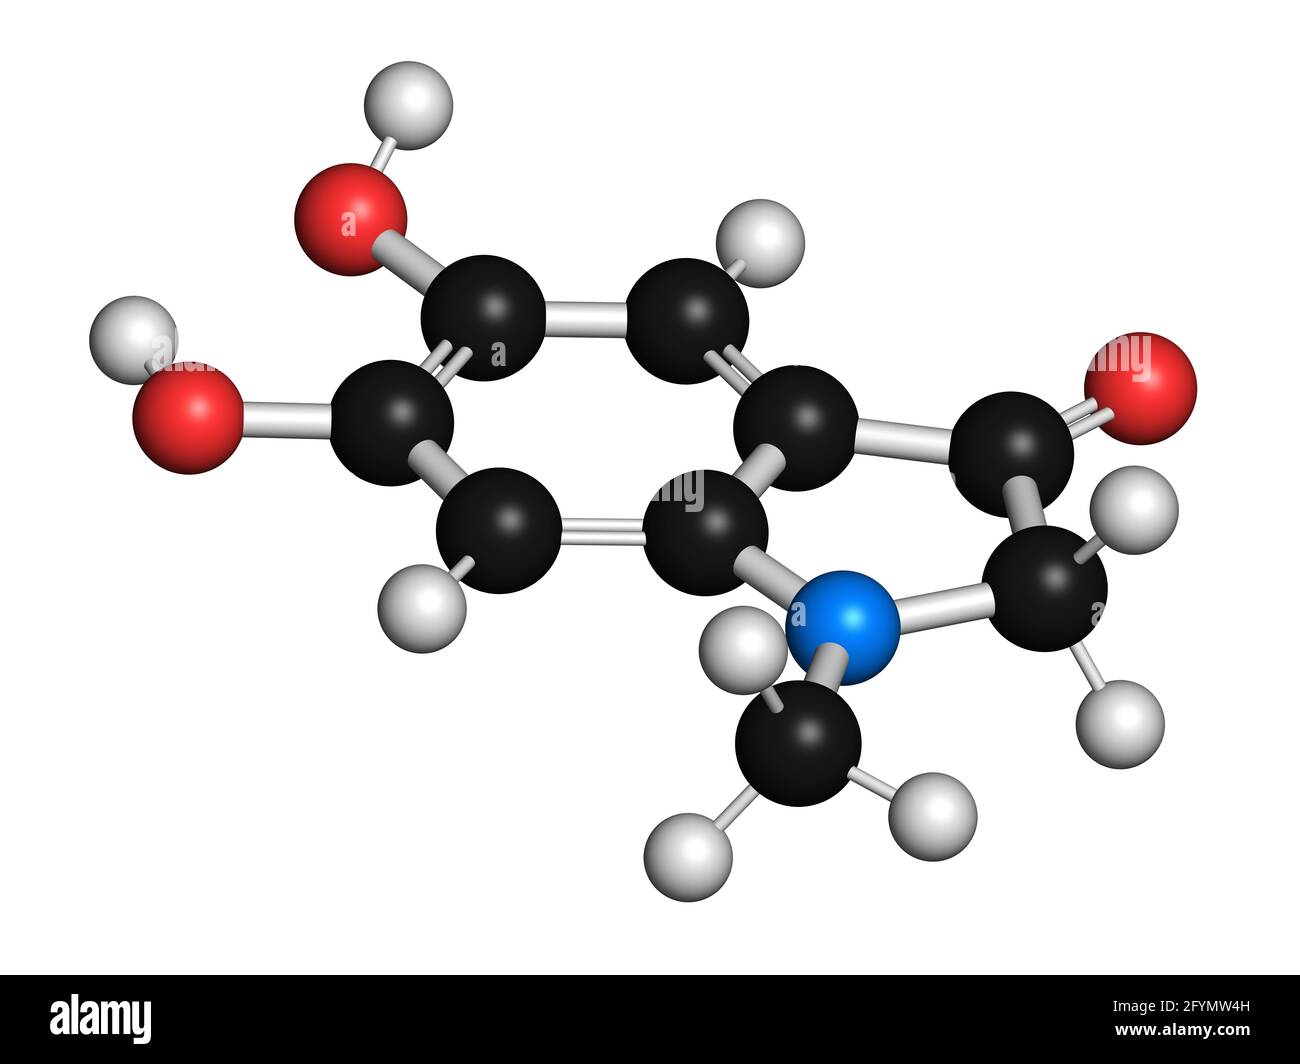 Adrenolutin molecule, illustration Stock Photo